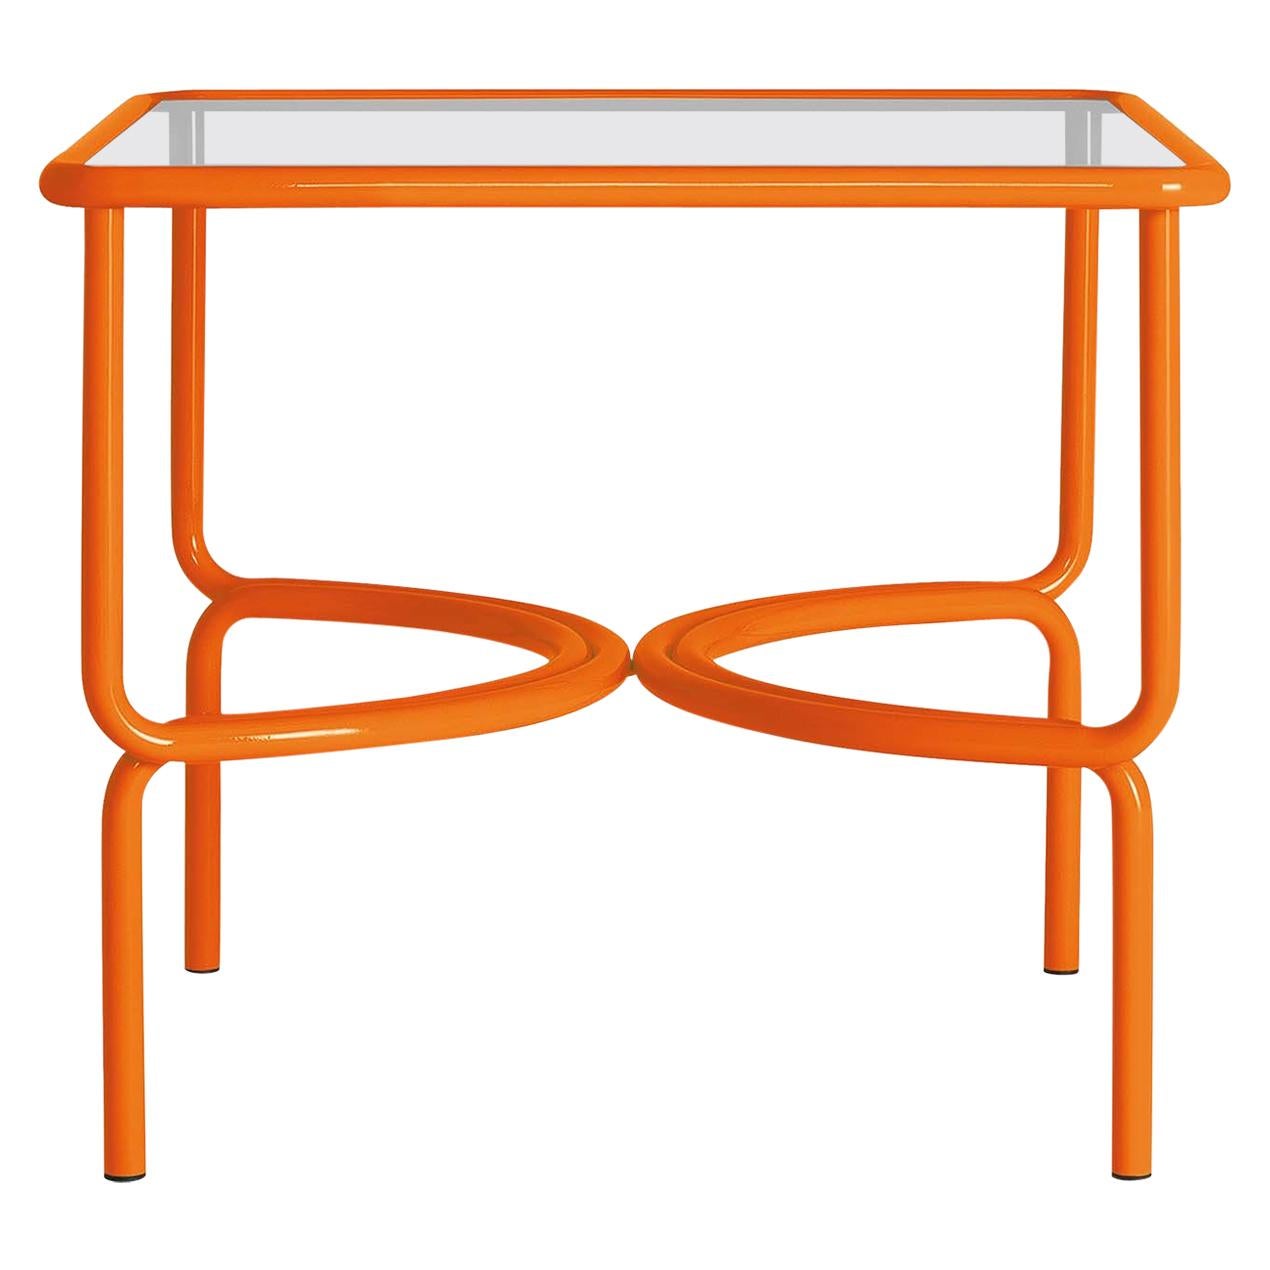 Locus Solus Orange Dining Table by Gae Aulenti